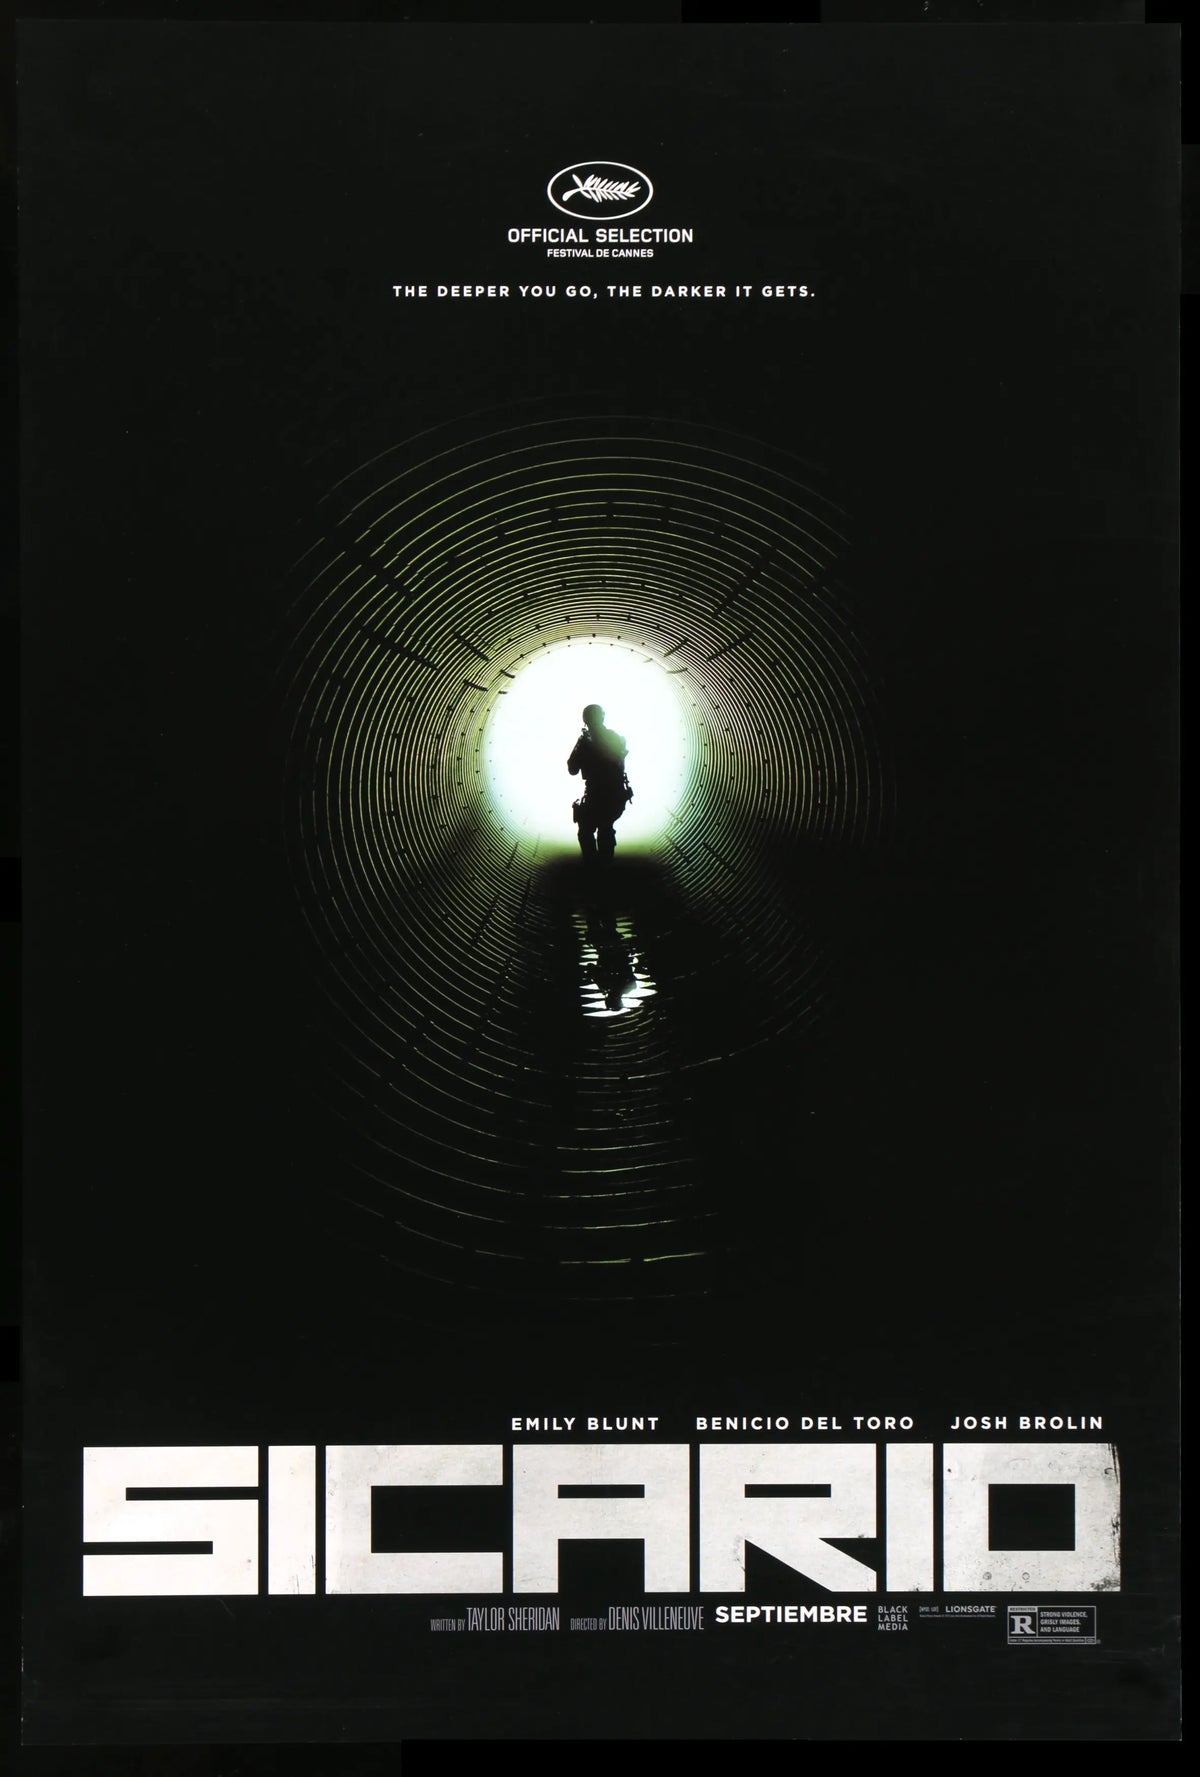 Sicario (2015) original movie poster for sale at Original Film Art